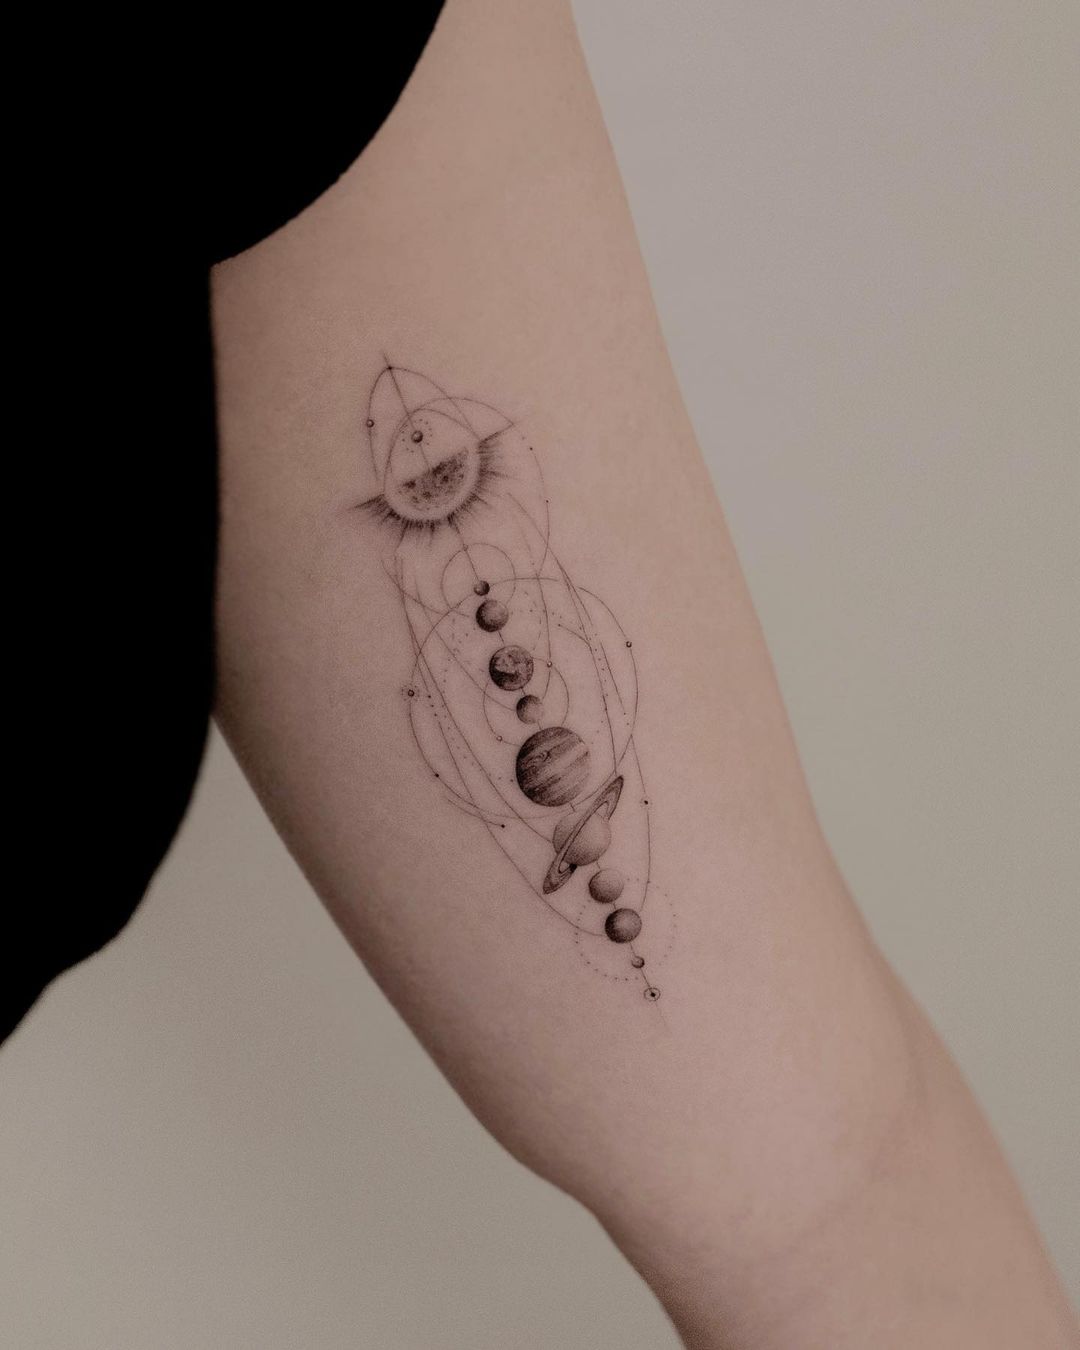 Solar system tattoo by jk.tattoo 2